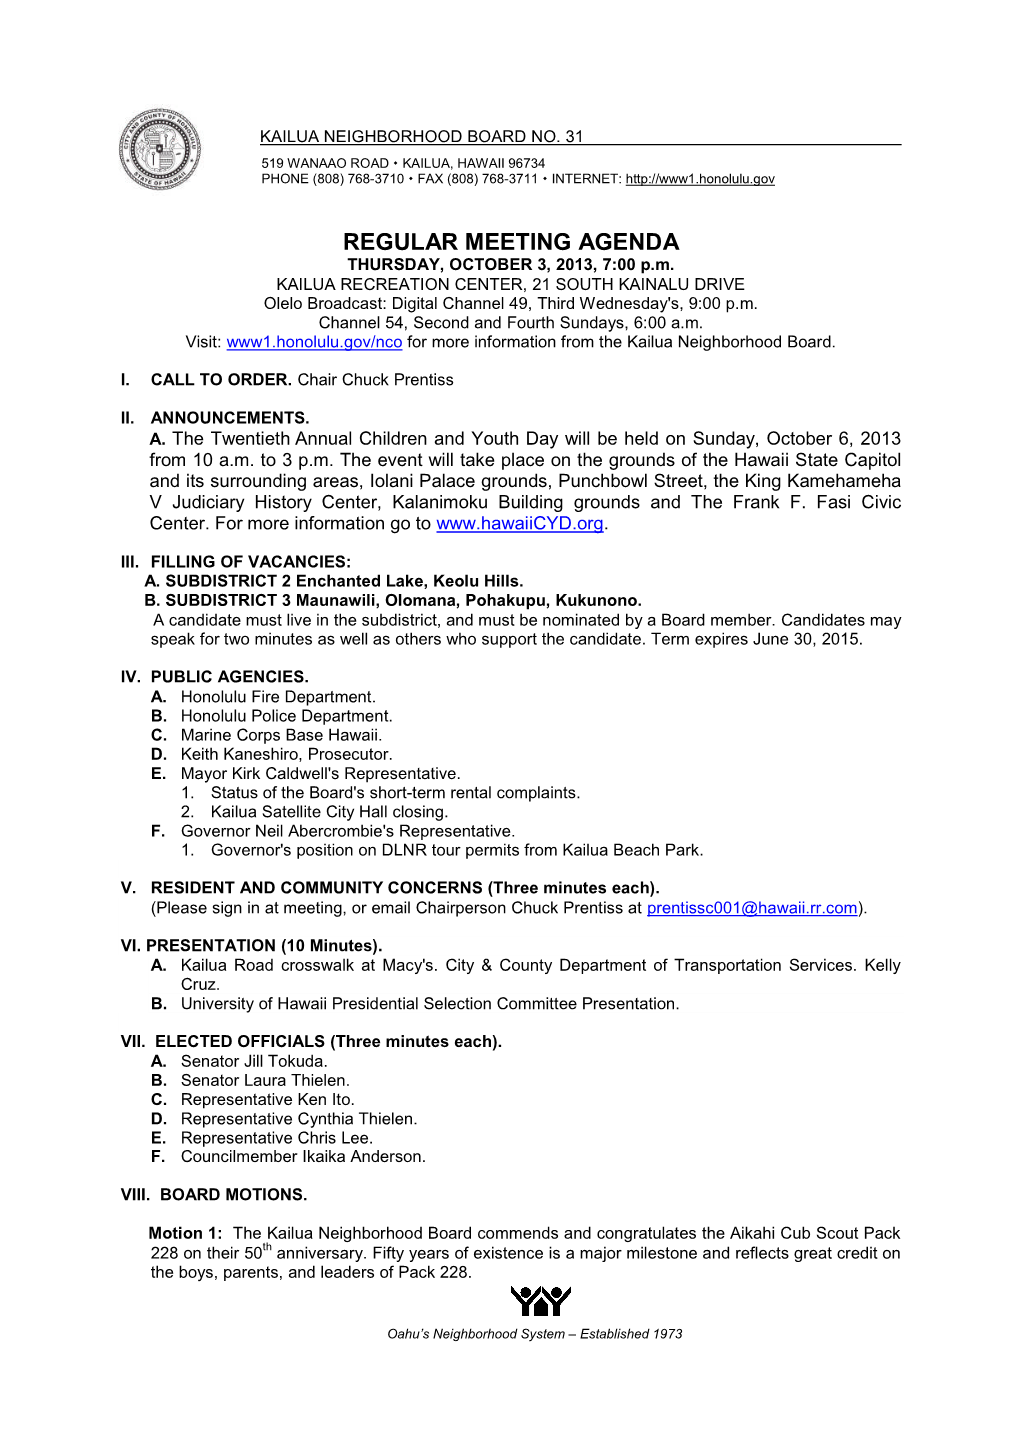 REGULAR MEETING AGENDA THURSDAY, OCTOBER 3, 2013, 7:00 P.M